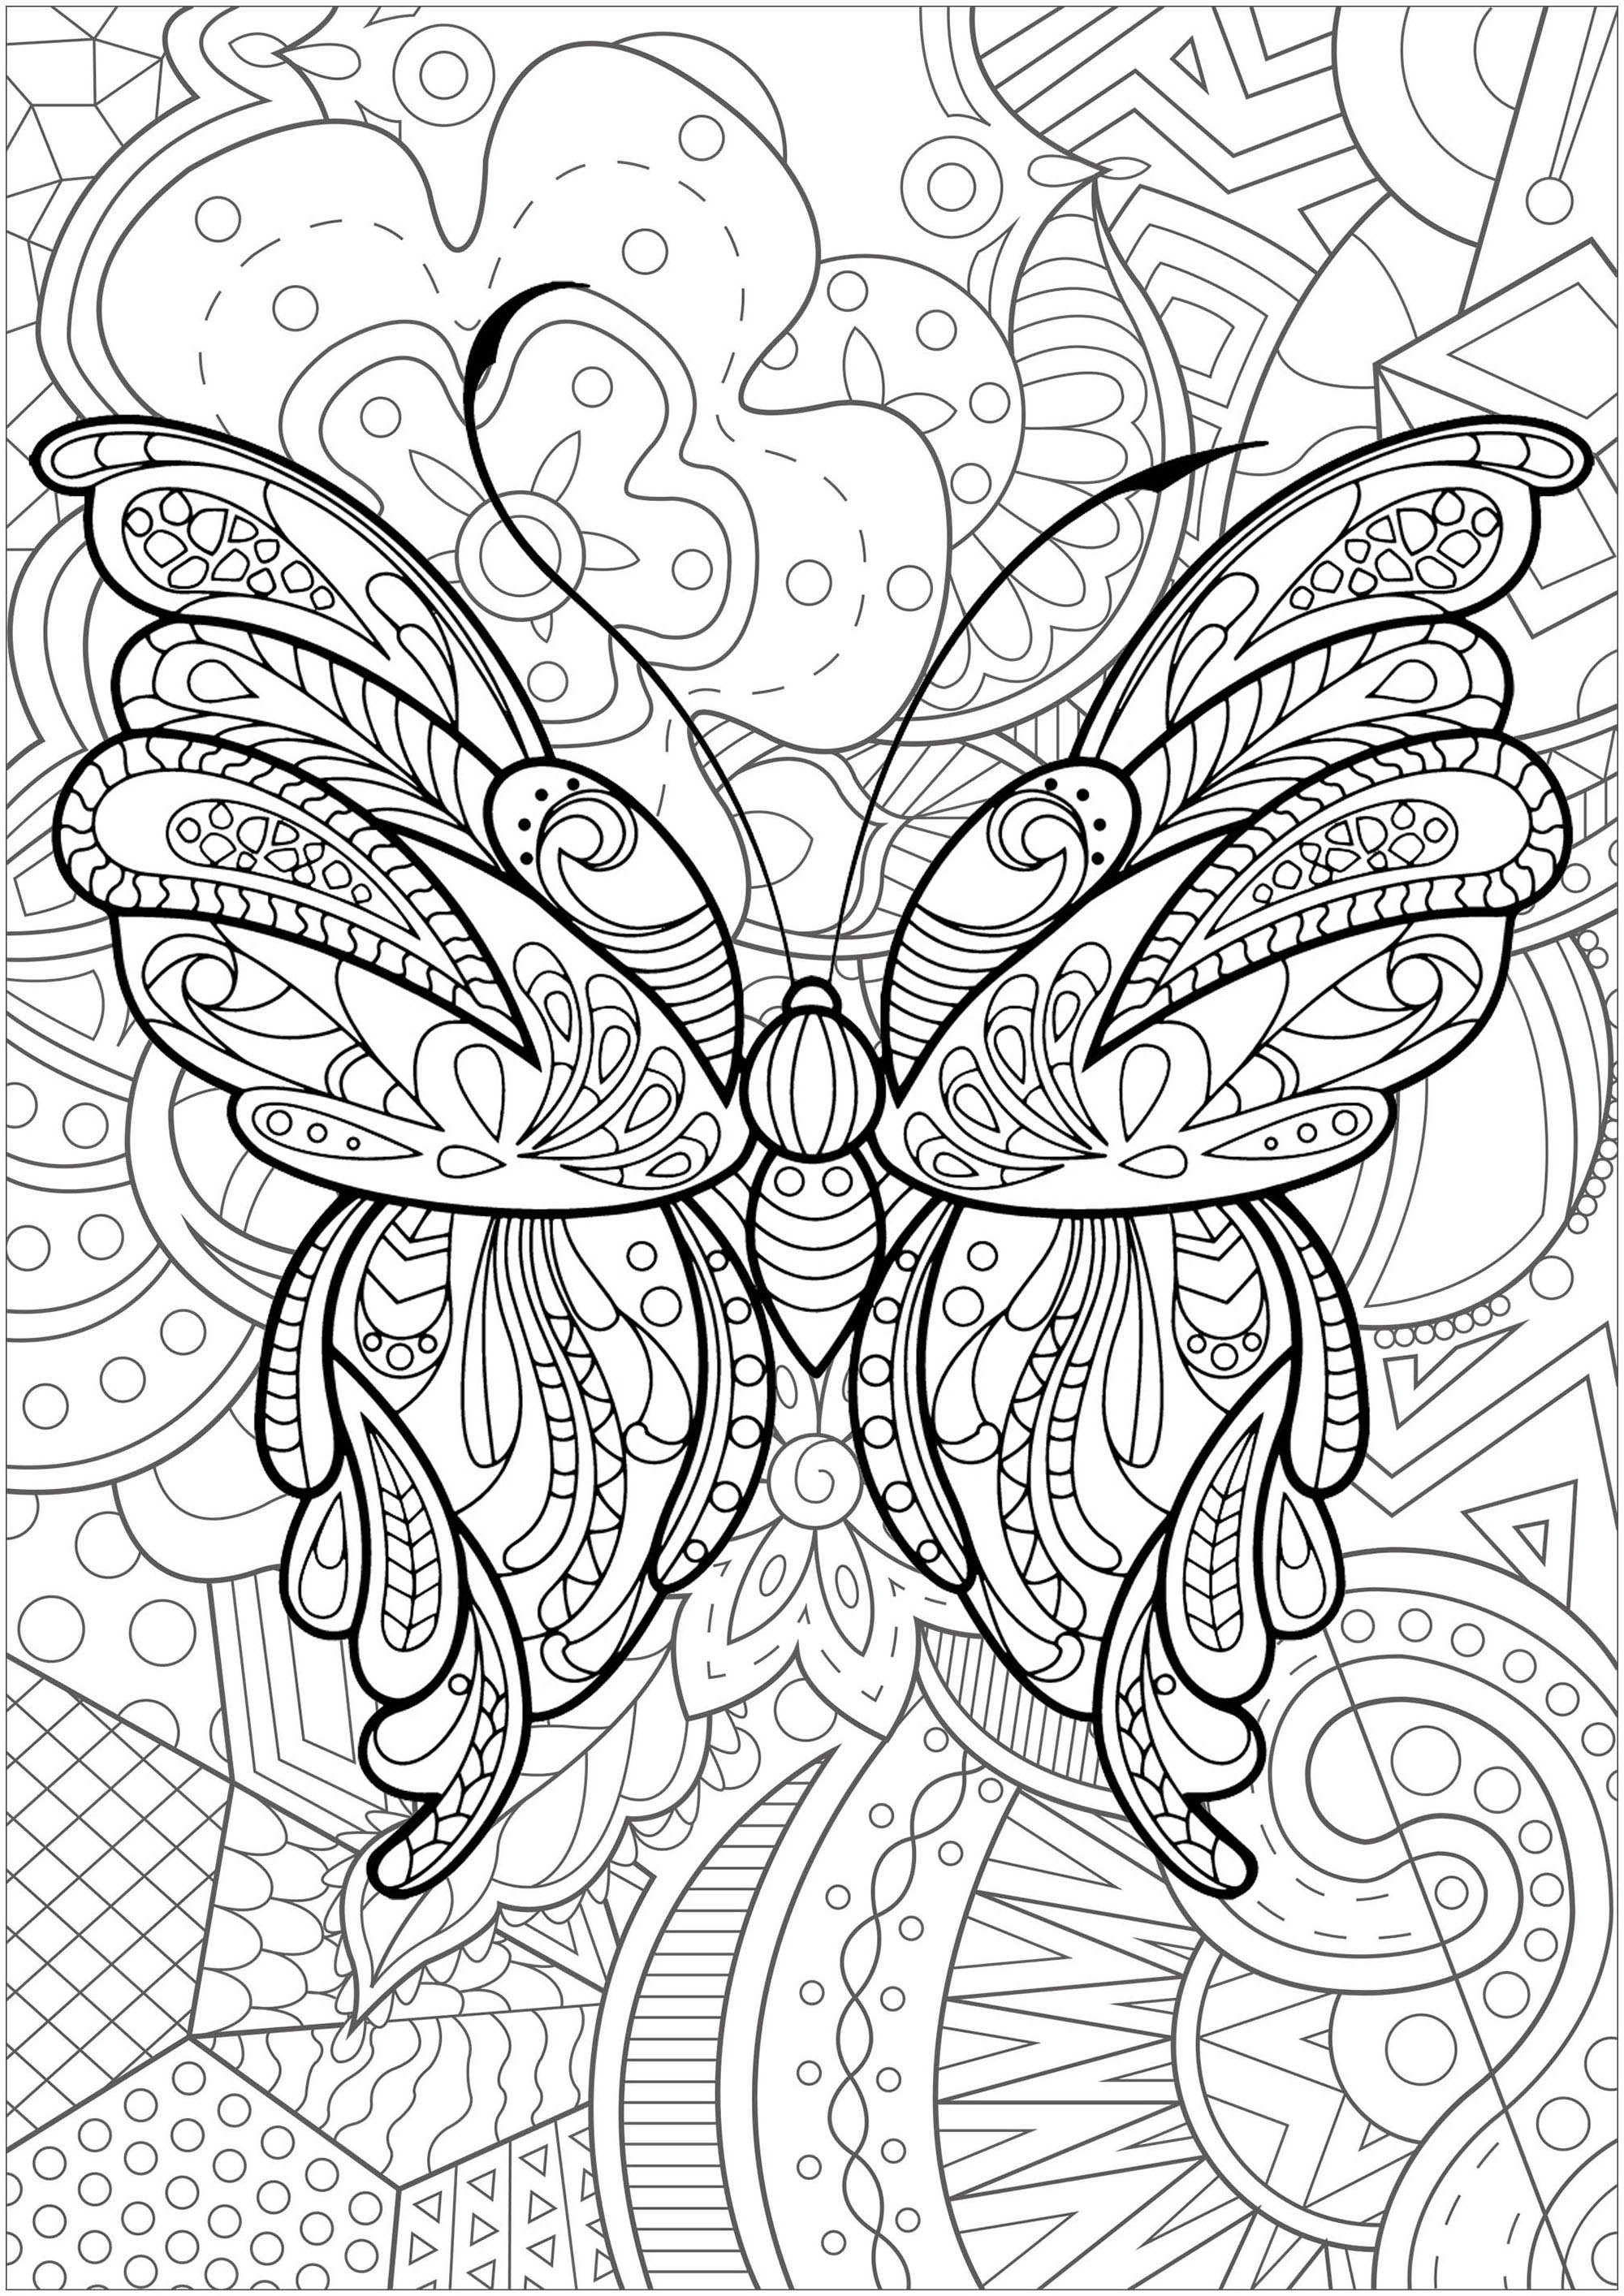 Schmetterling mit Mustern im Inneren und prächtigen geblümten Hintergrund - 1, Künstler : Art'Isabelle